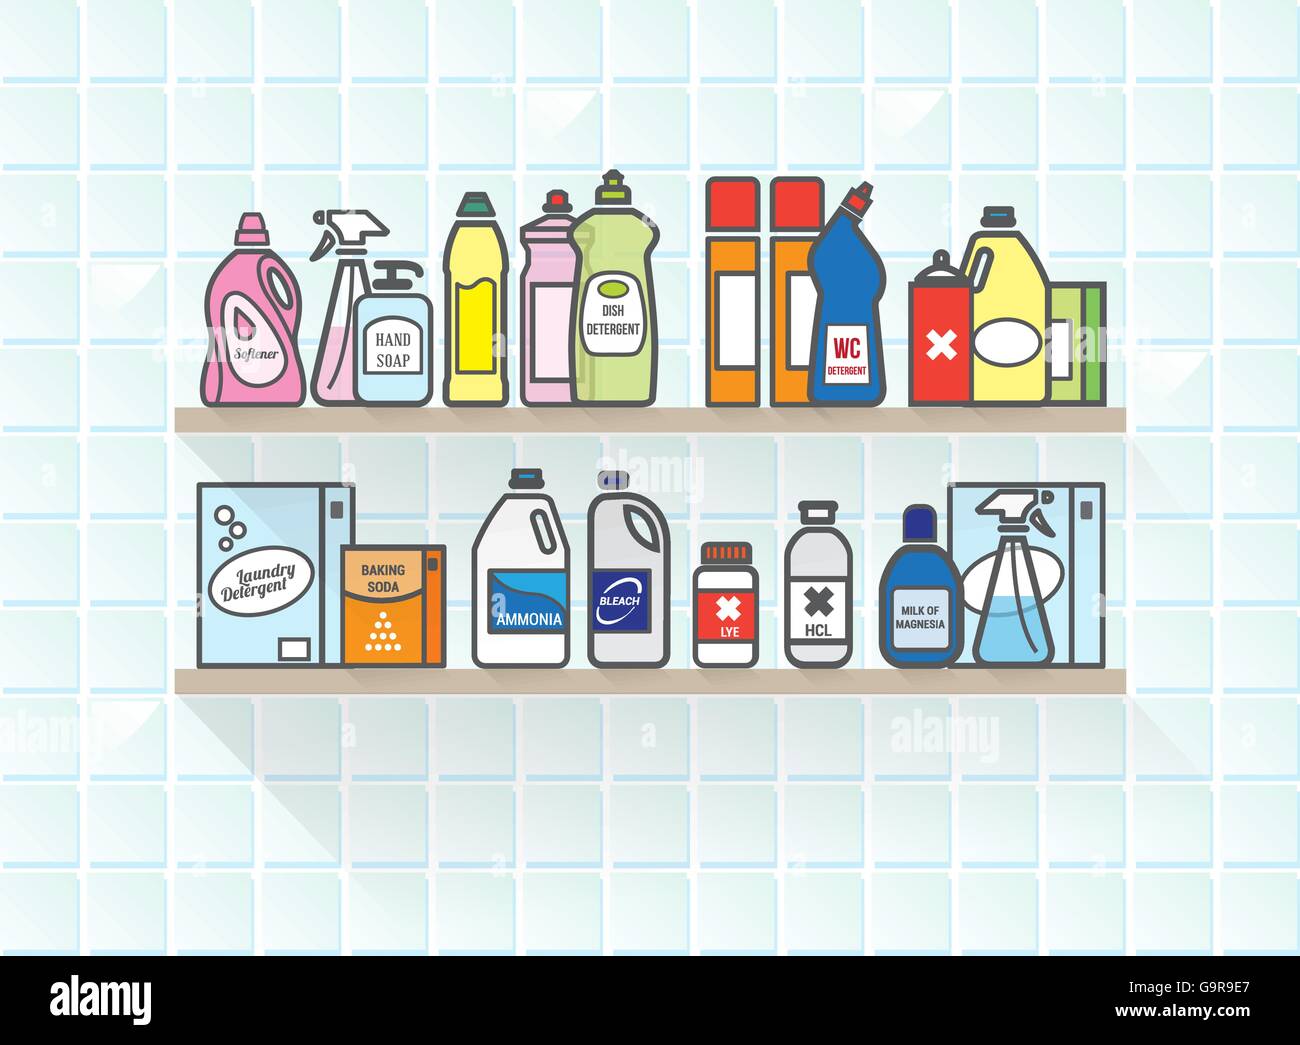 Waschmittel-set auf Bad Regal darunter verschiedene Arten von Verpackungen  Stock-Vektorgrafik - Alamy